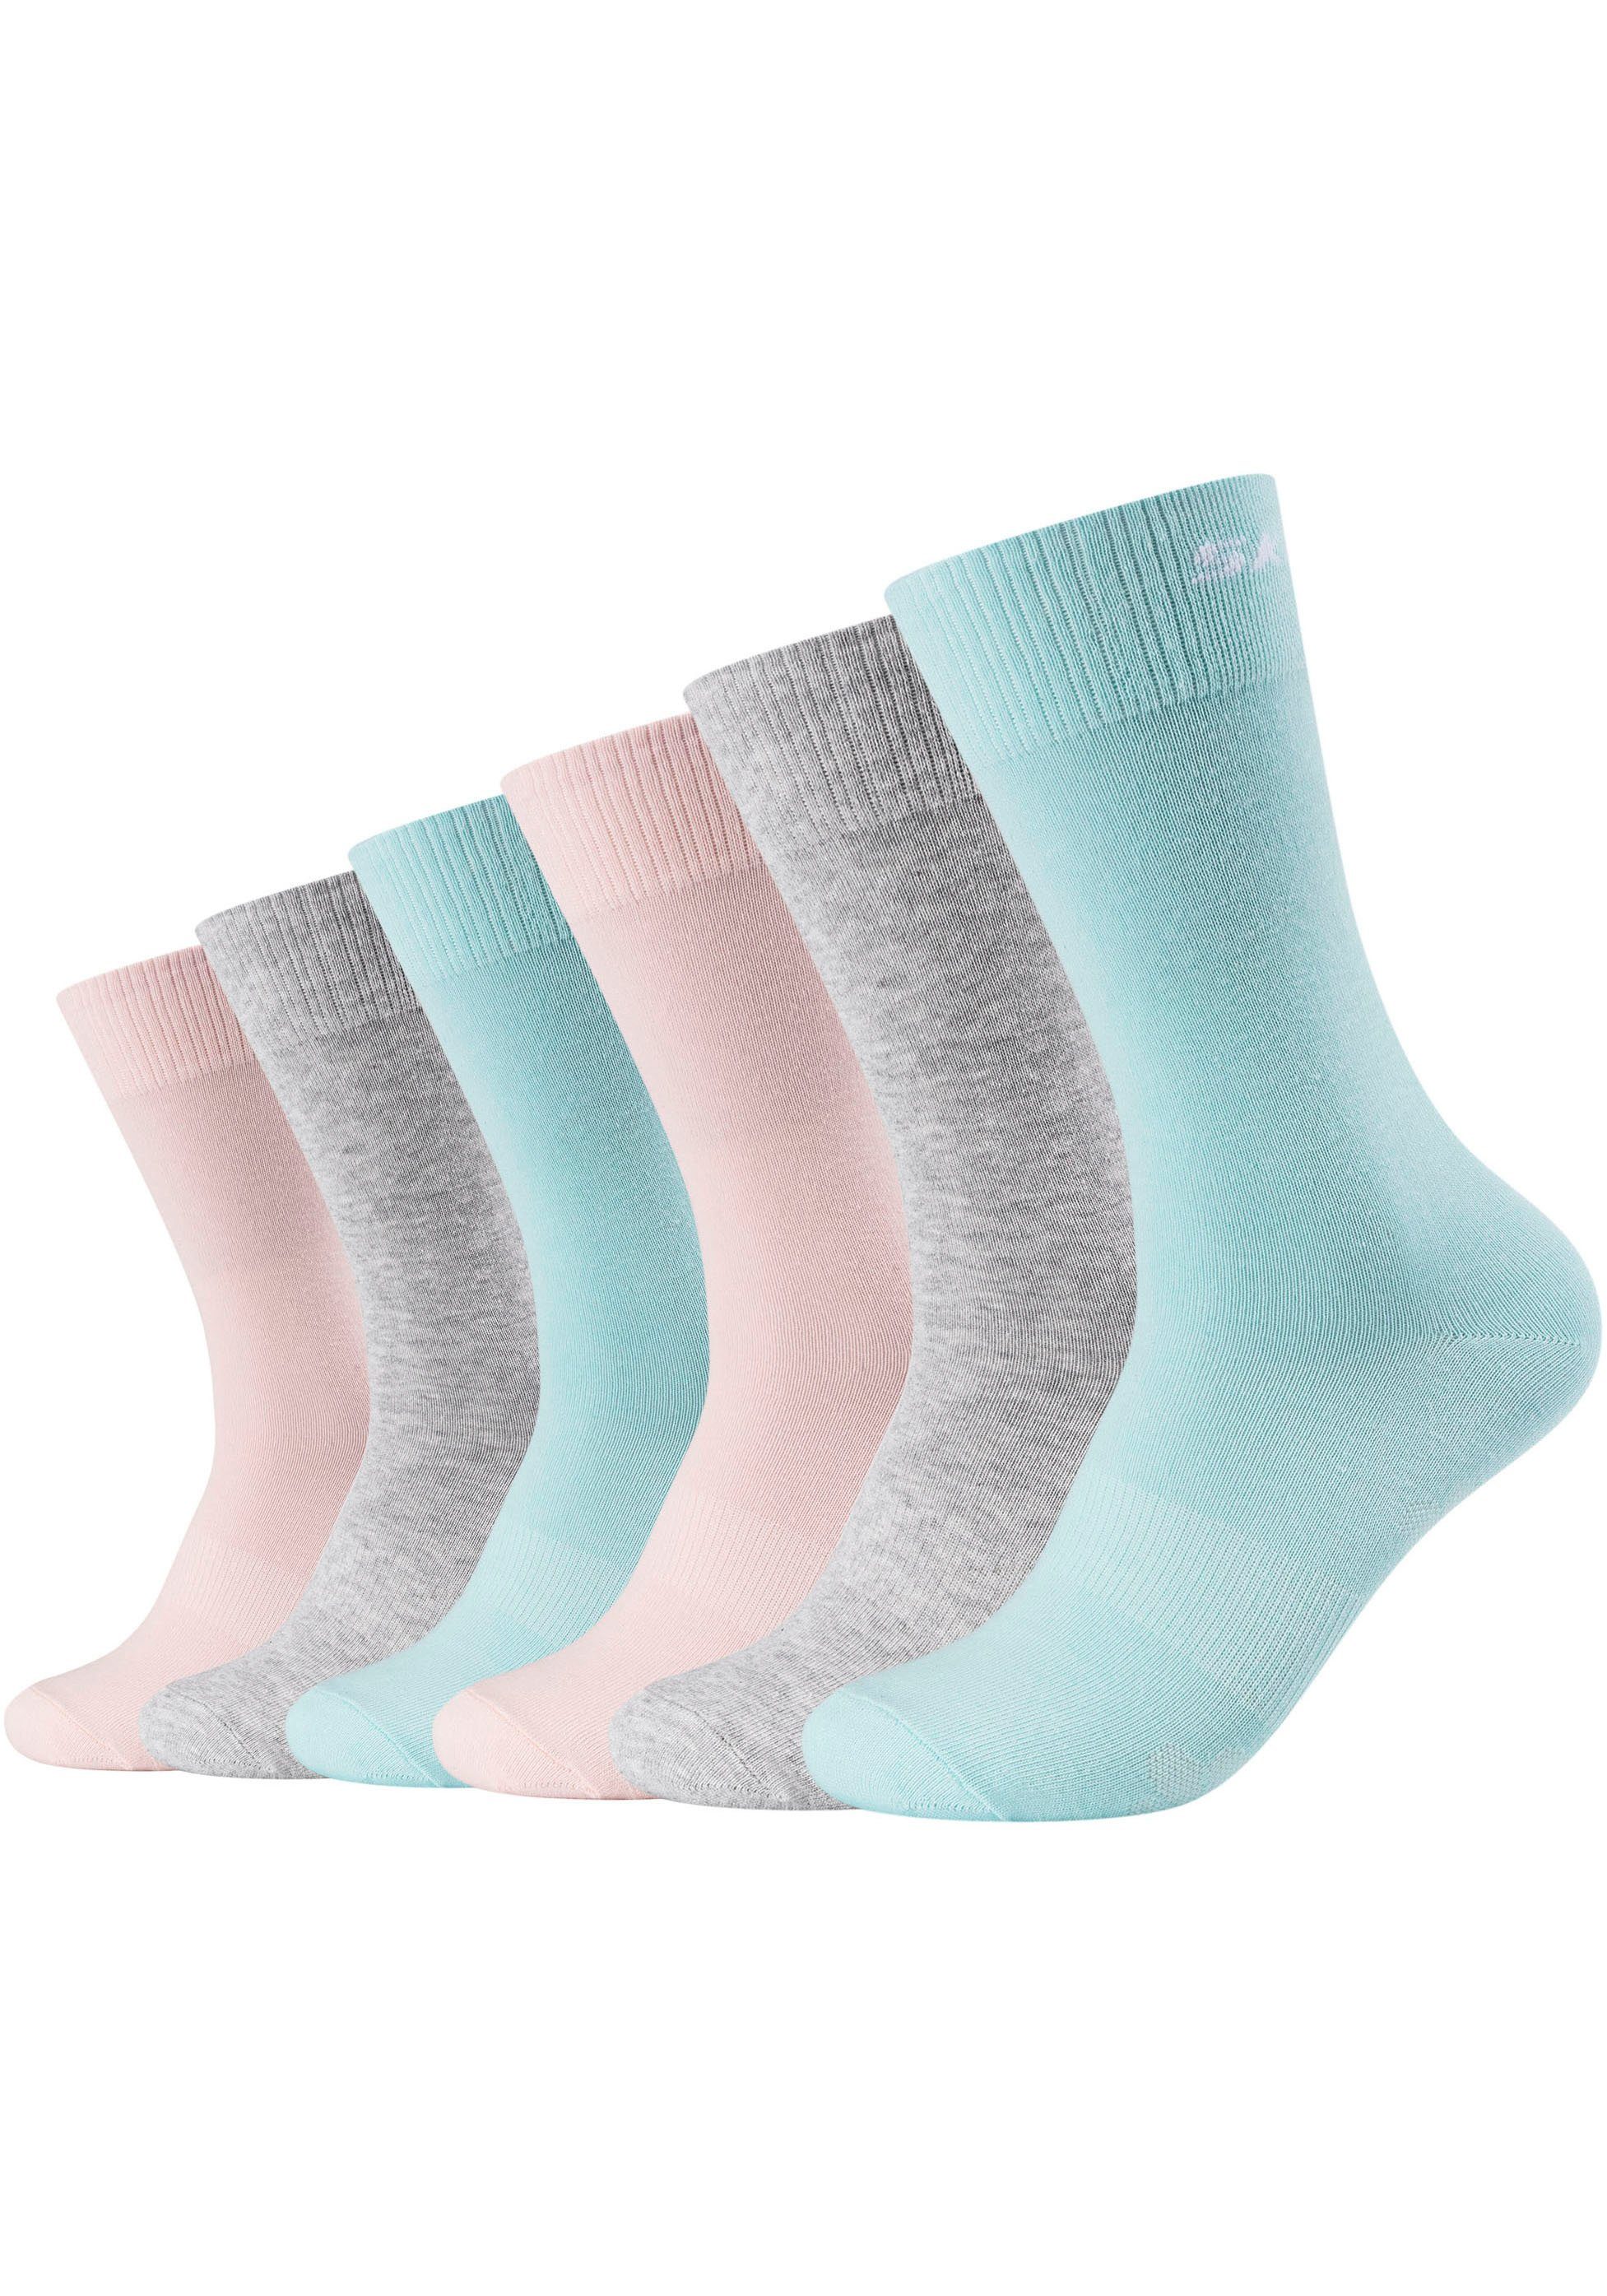 Fersen- Socken langlebig: Zehenbereich verstärkter Robust und 6-Paar) grau-rose-aqua Skechers (Packung, und